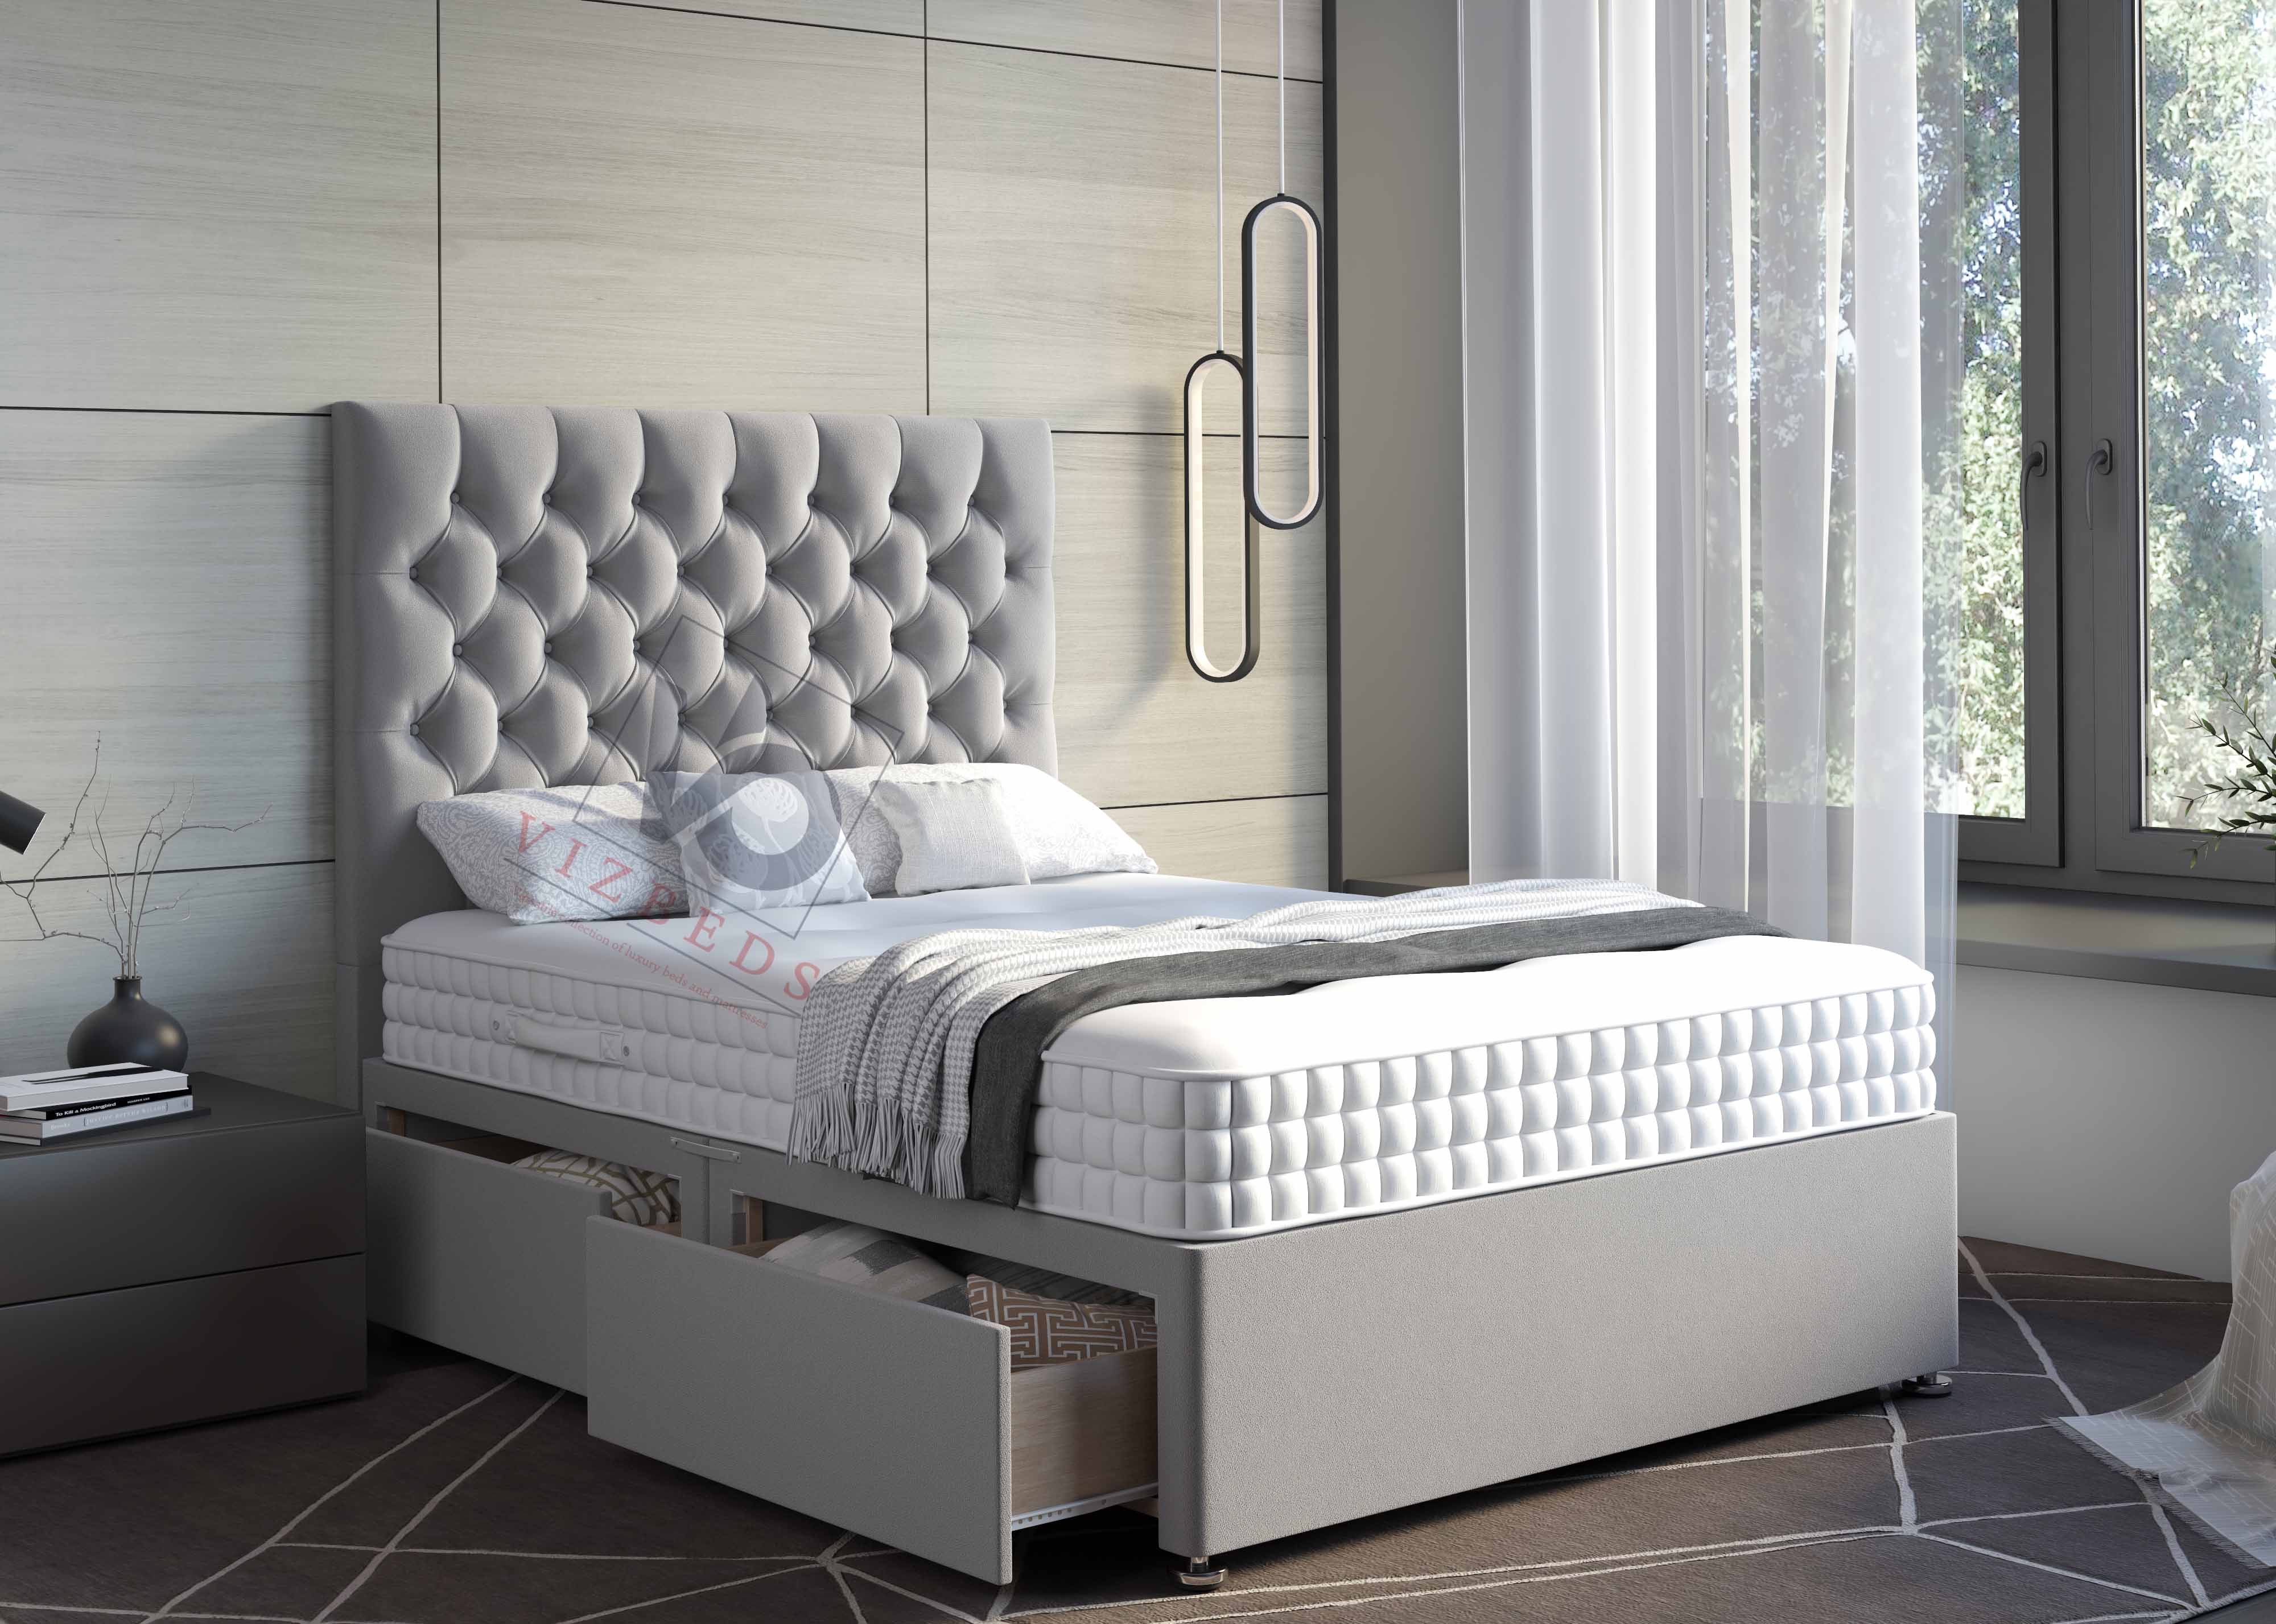 01- Divan Bed With Luxury Tall 54" Floor Standing Headboard